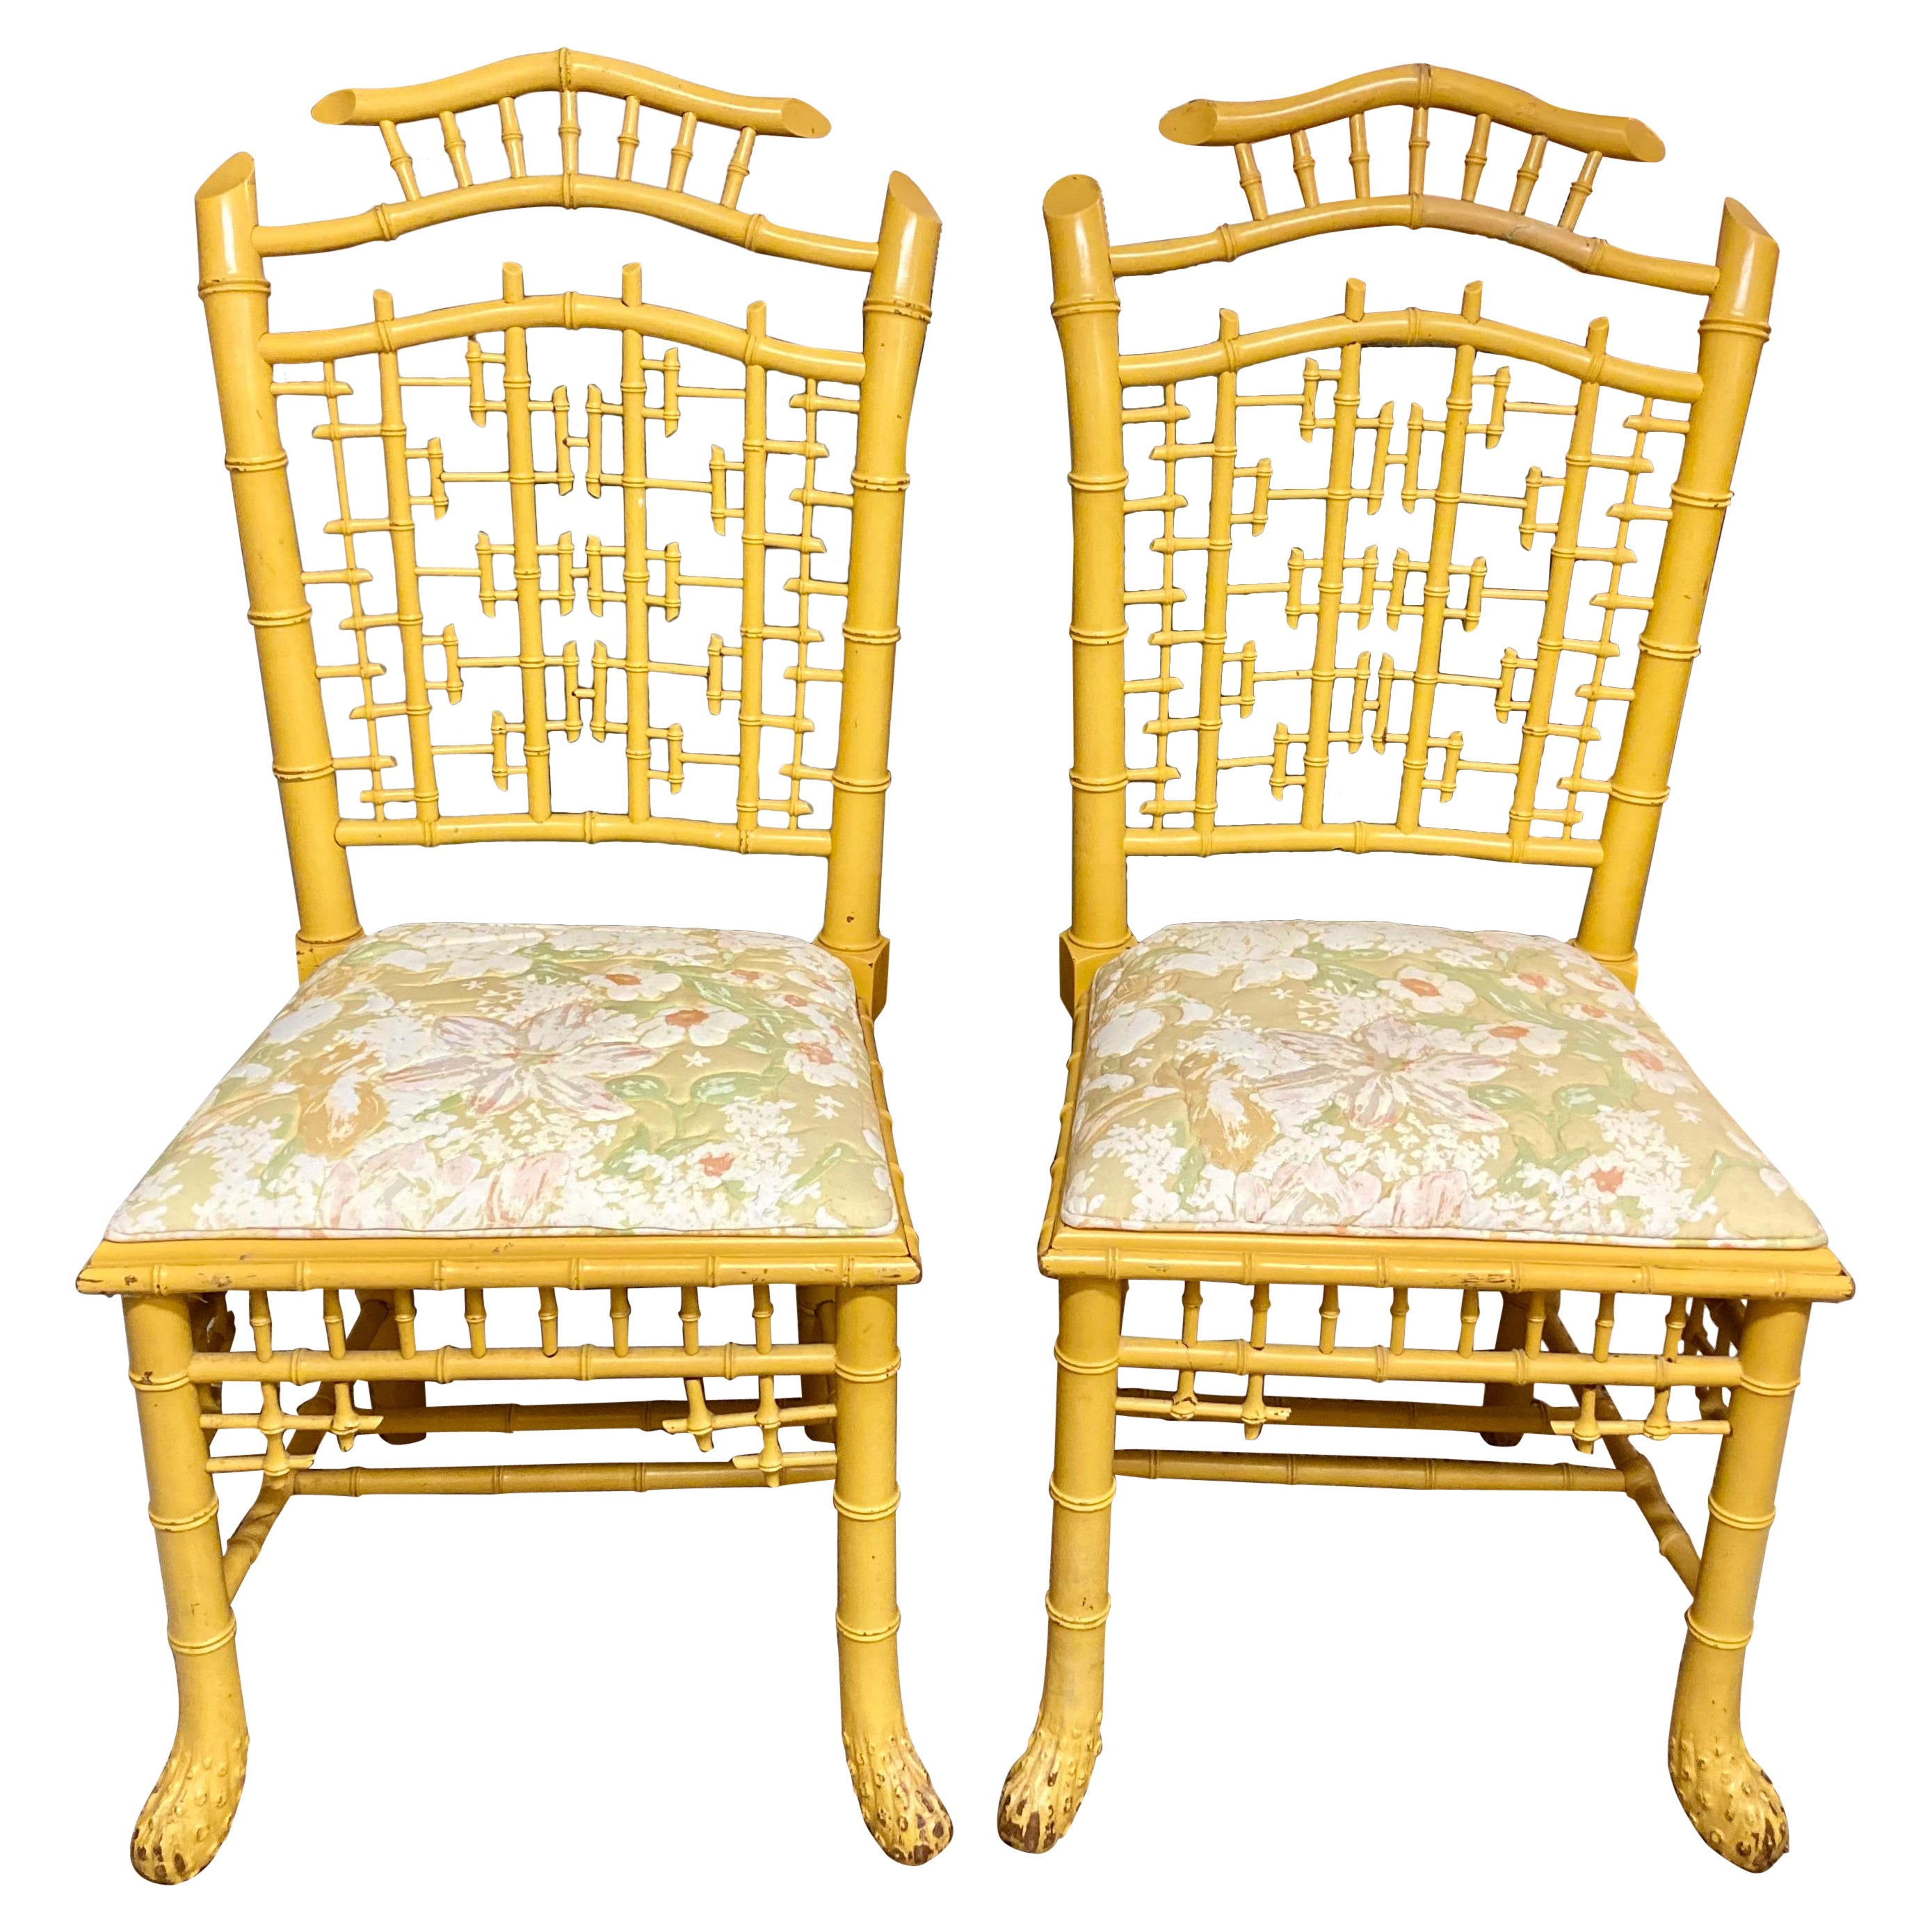 Englische geschnitzte Beistellstühle aus Kunstbambus in gelber Oberfläche, Paar